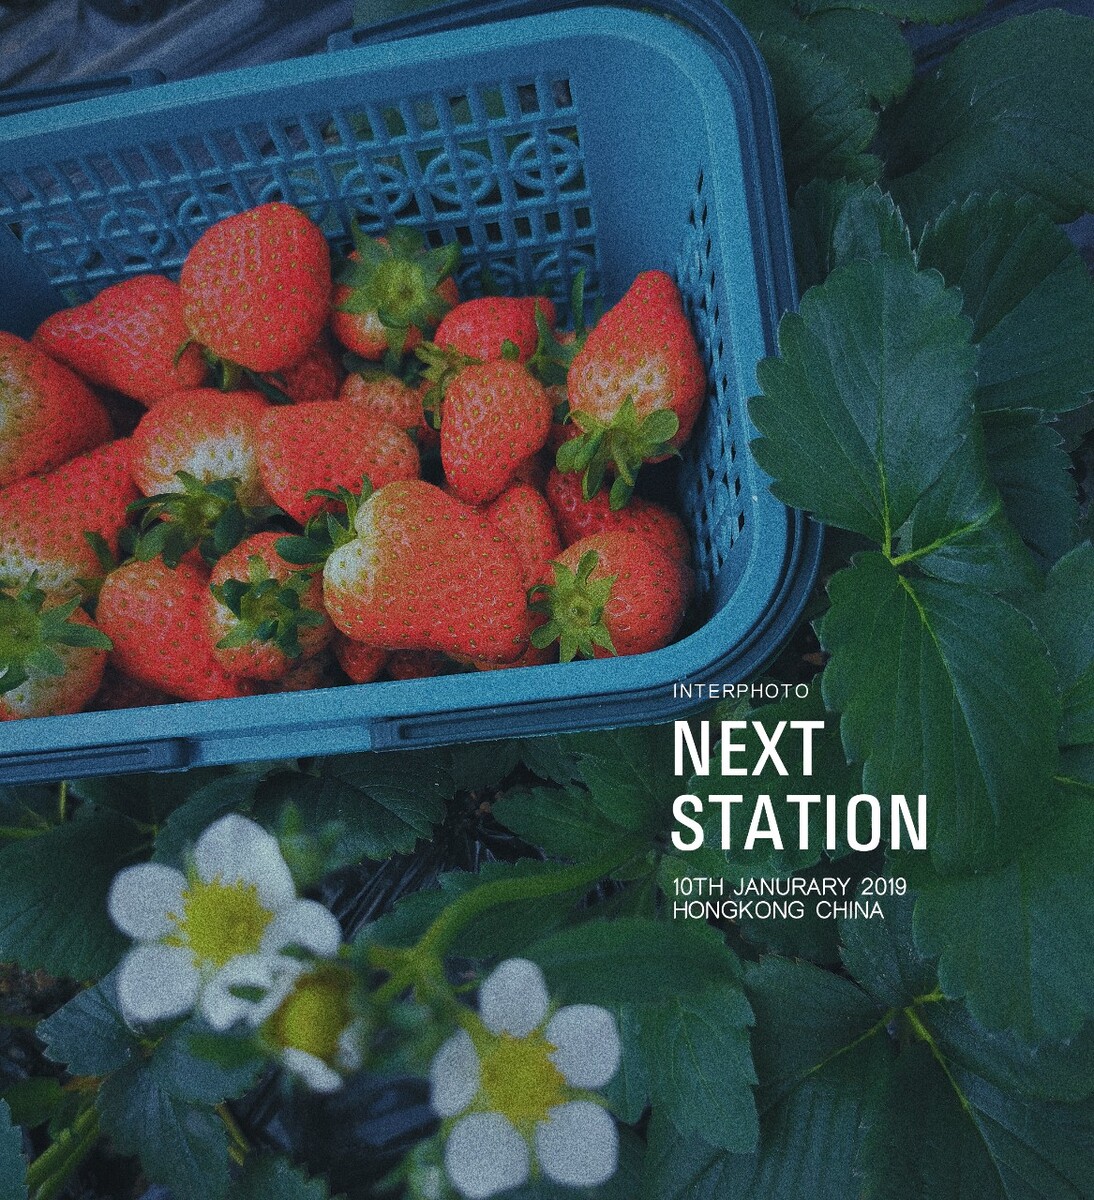 智能花盆种草莓,草莓怎么种蓬莱仙